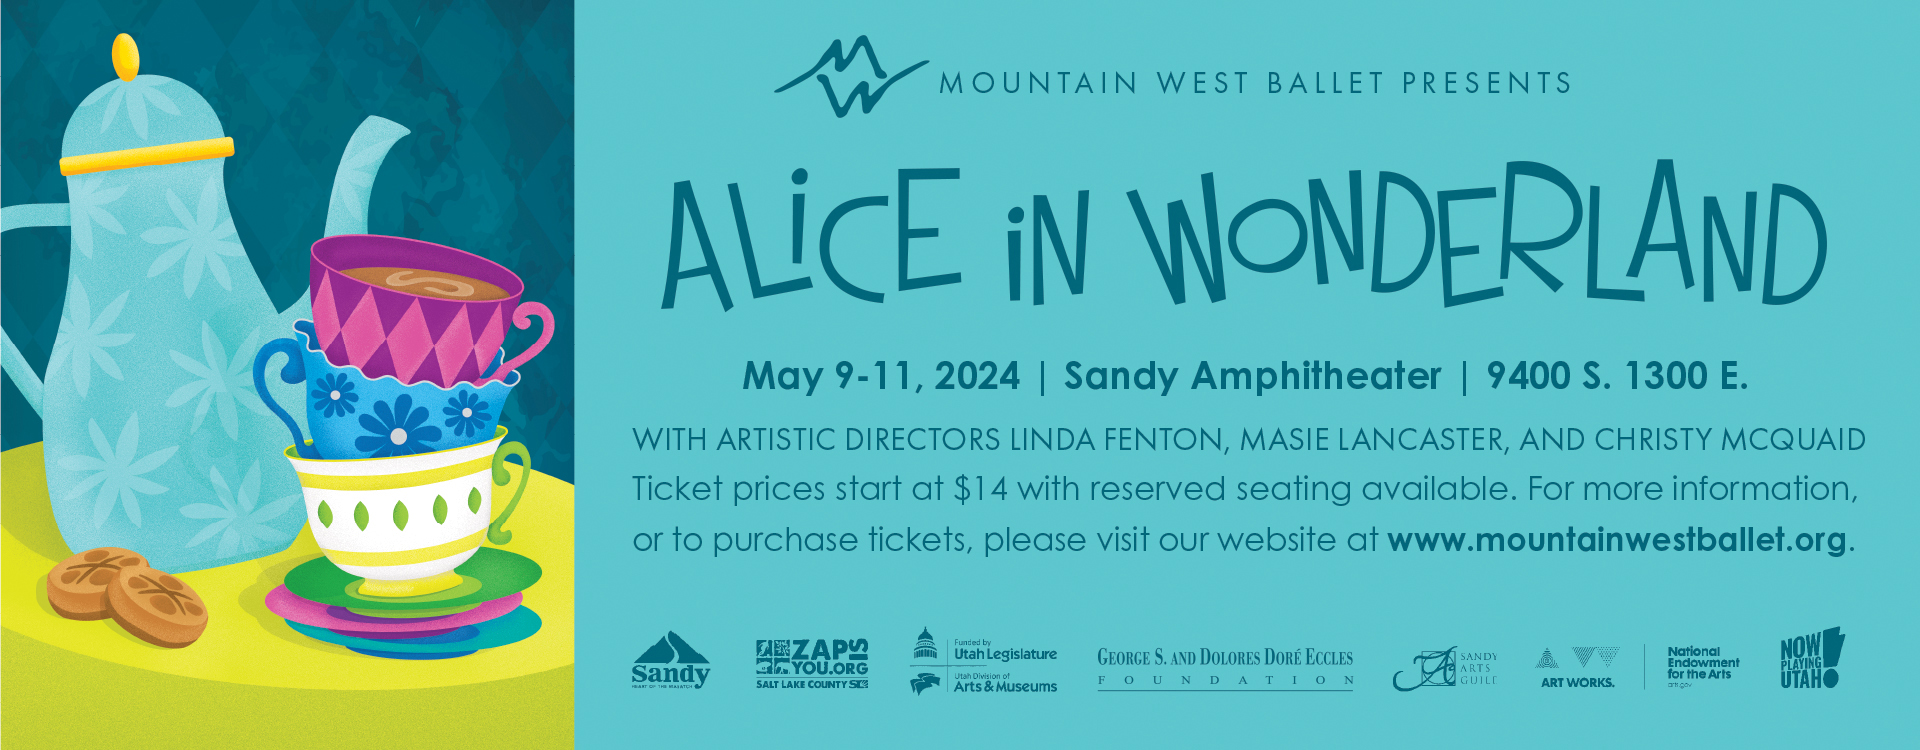 Mountain West Ballet: Alice in Wonderland